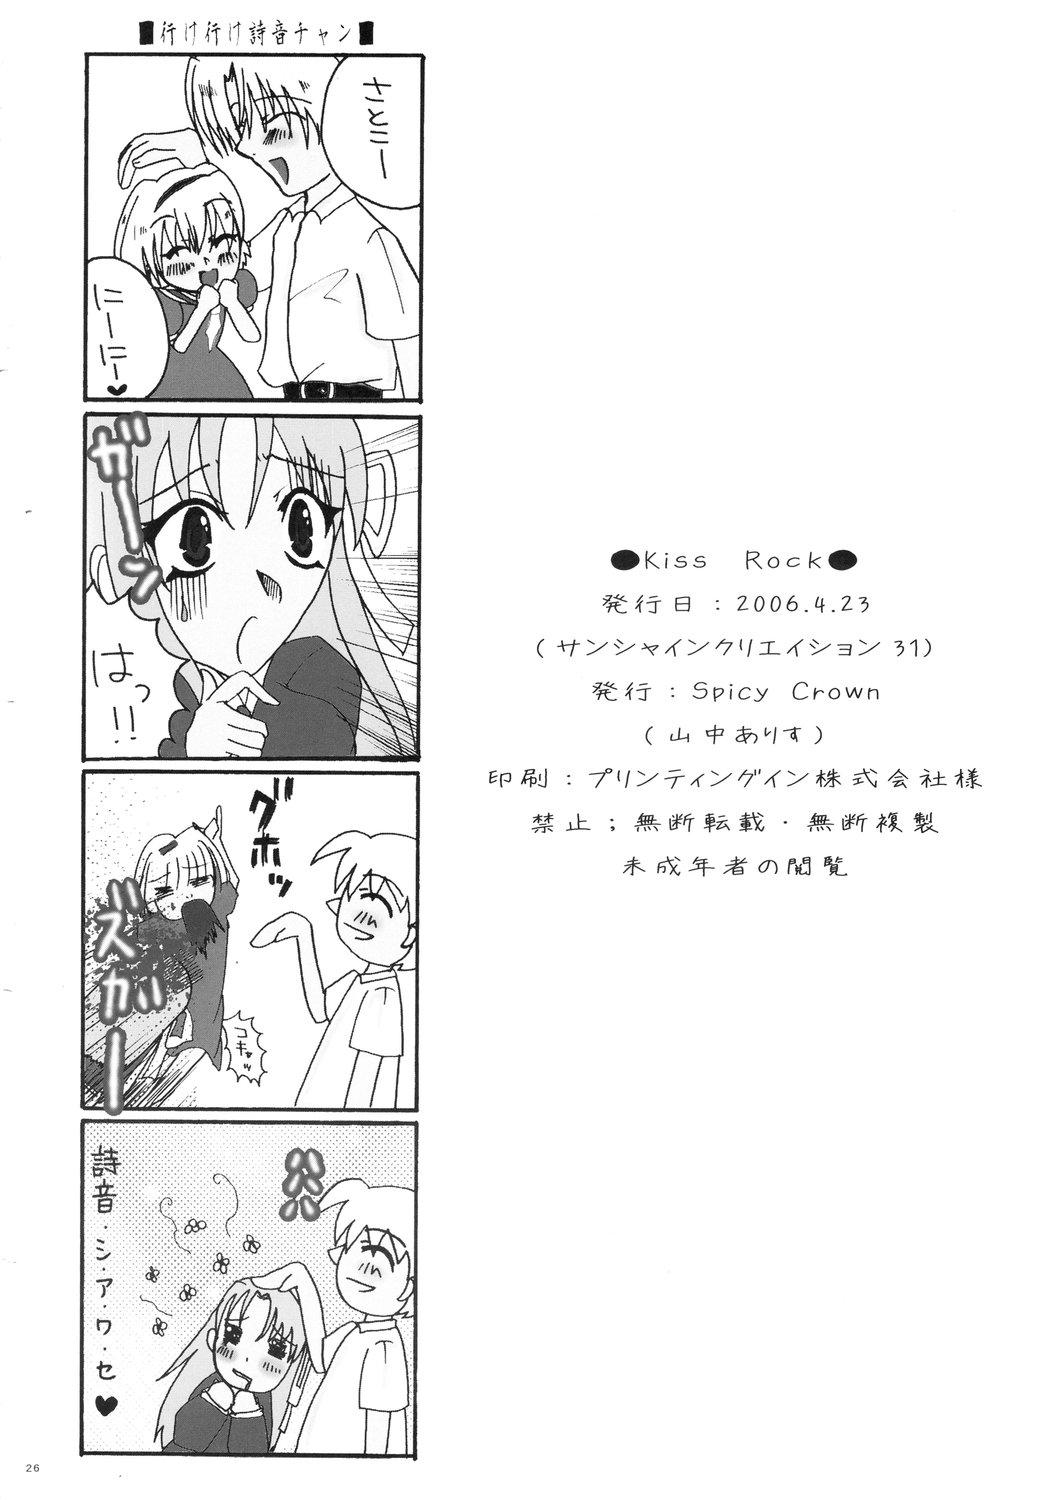 Mamando Kiss Rock - Higurashi no naku koro ni Gays - Page 26